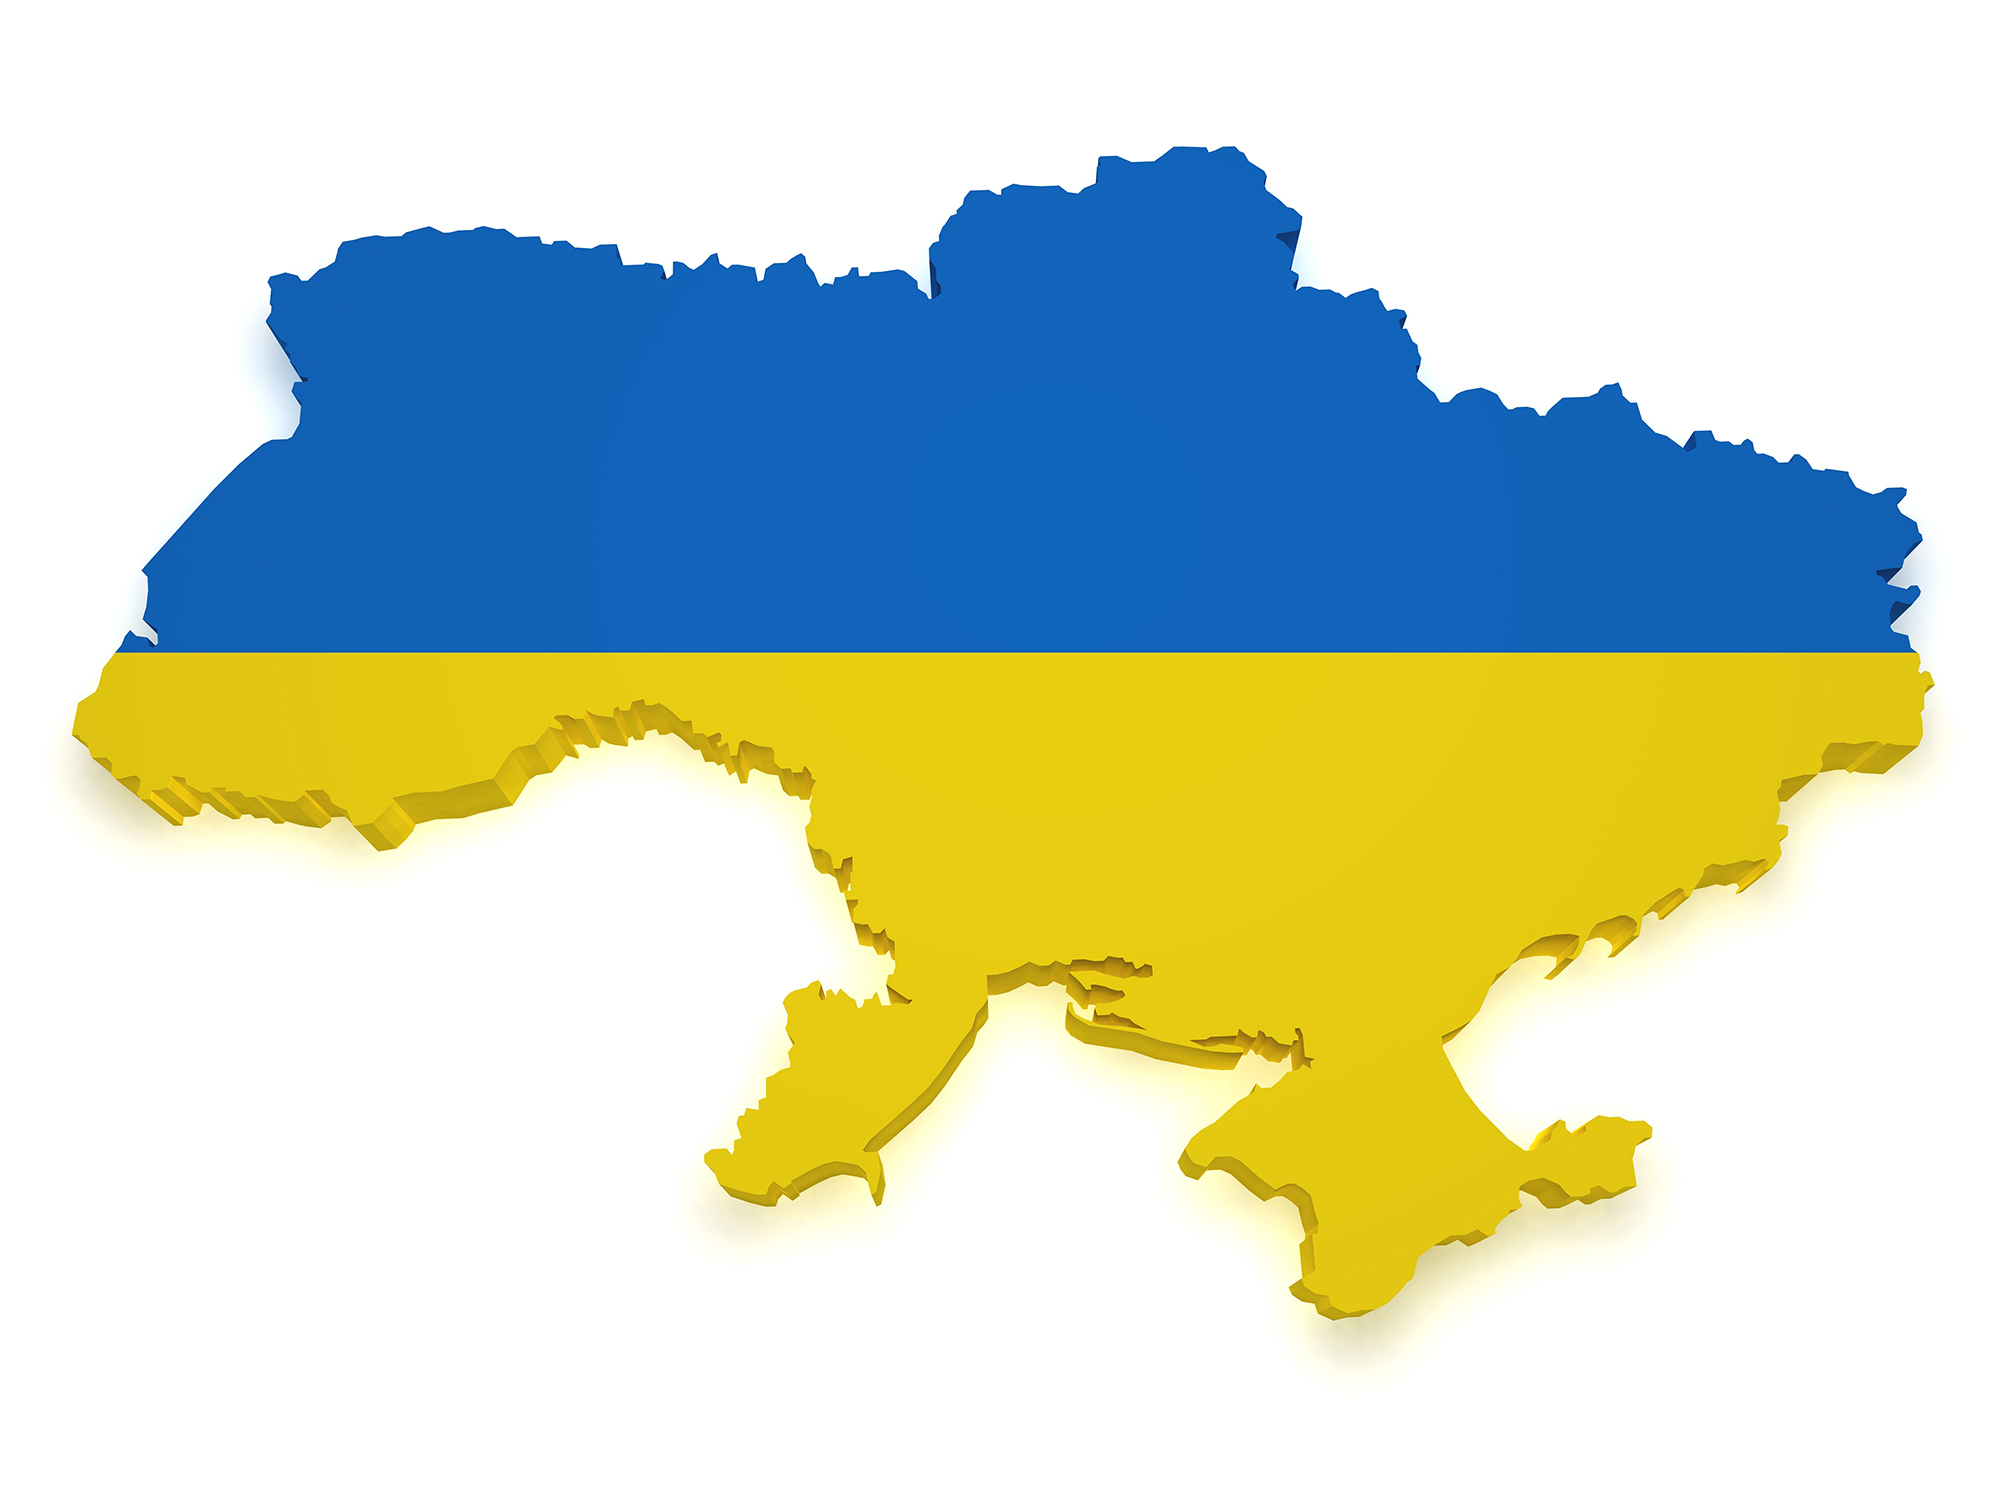 Ukrainan kartta lipun väreissä